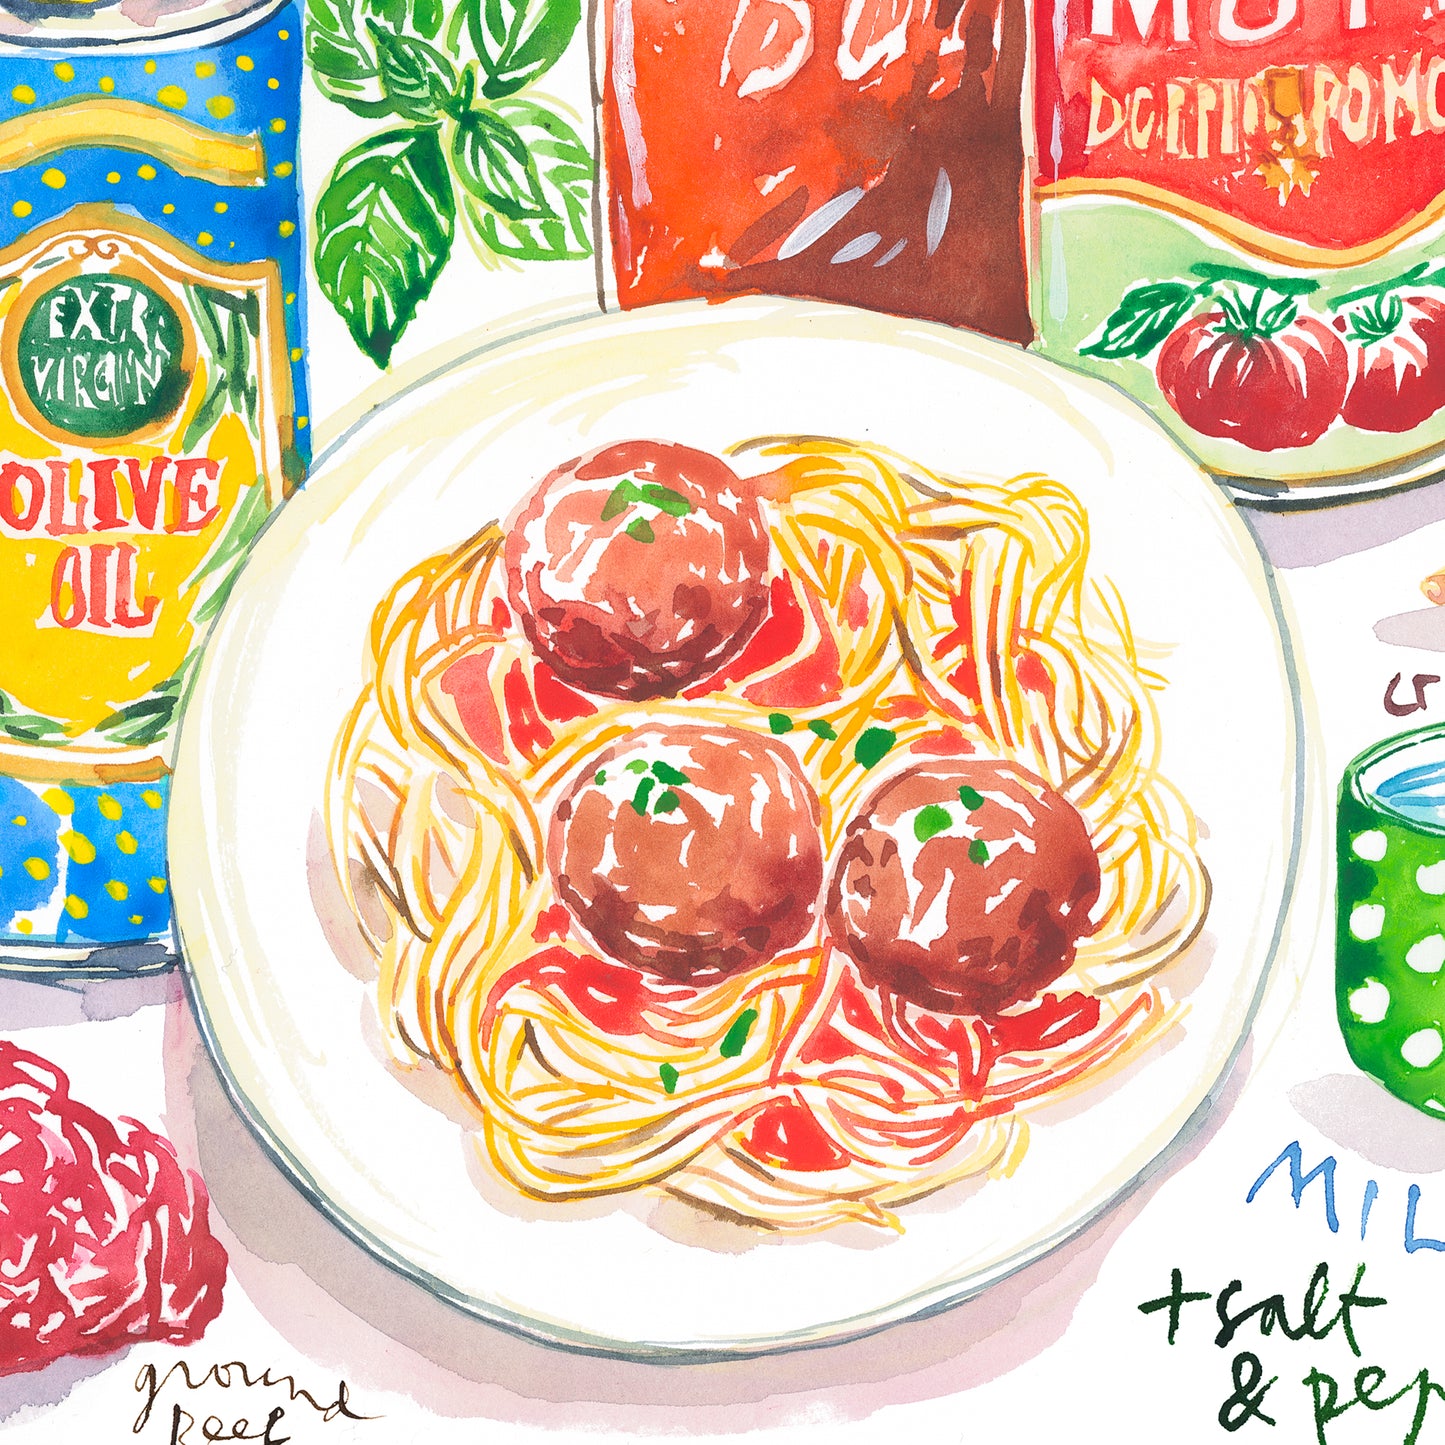 Spaghetti & Meatballs recipe